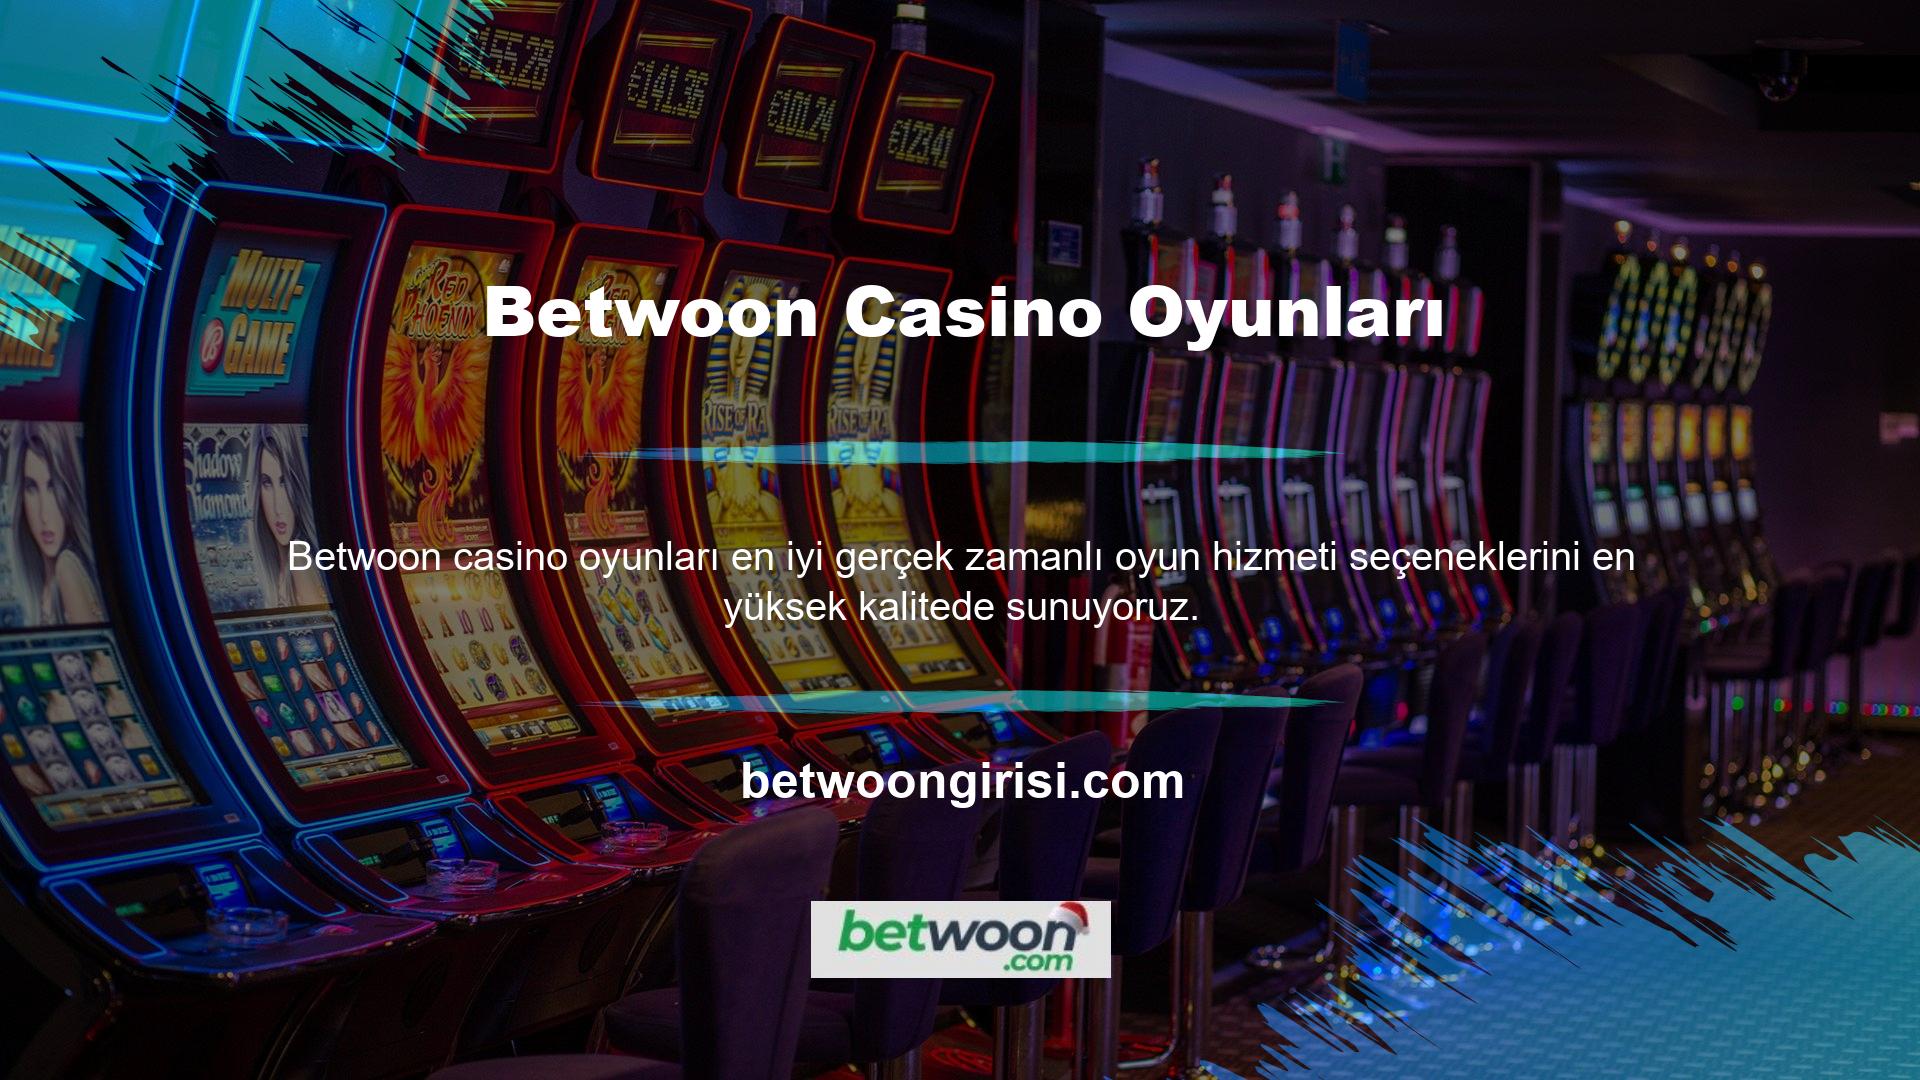 Betwoon Canlı Casino bölümündeki popüler oyun türleri şunlardır:

	Blackjack,
	Poker,
	Rulet,
	Hold'em Casino
	Bakara,
	Ejderha Kaplanı
	Genç Patty,

Birçok oyun sağlayıcının oyun desteği, üyelerin her türlü canlı casino oyununu oynamasına olanak tanır